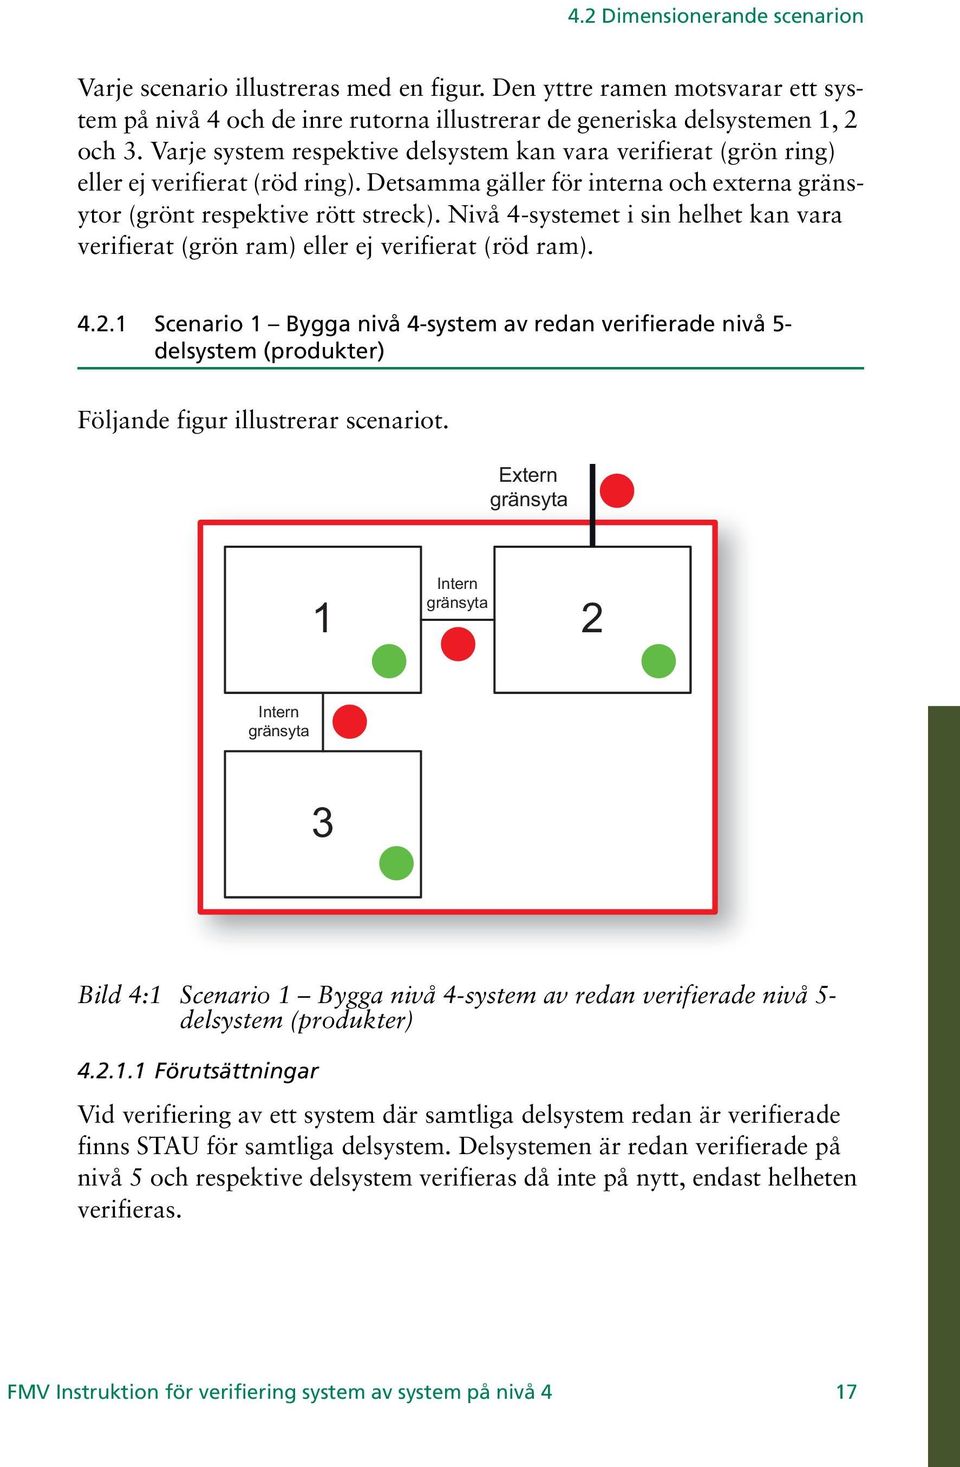 Nivå 4-systemet i sin helhet kan vara verifierat (grön ram) eller ej verifierat (röd ram). 4.2.